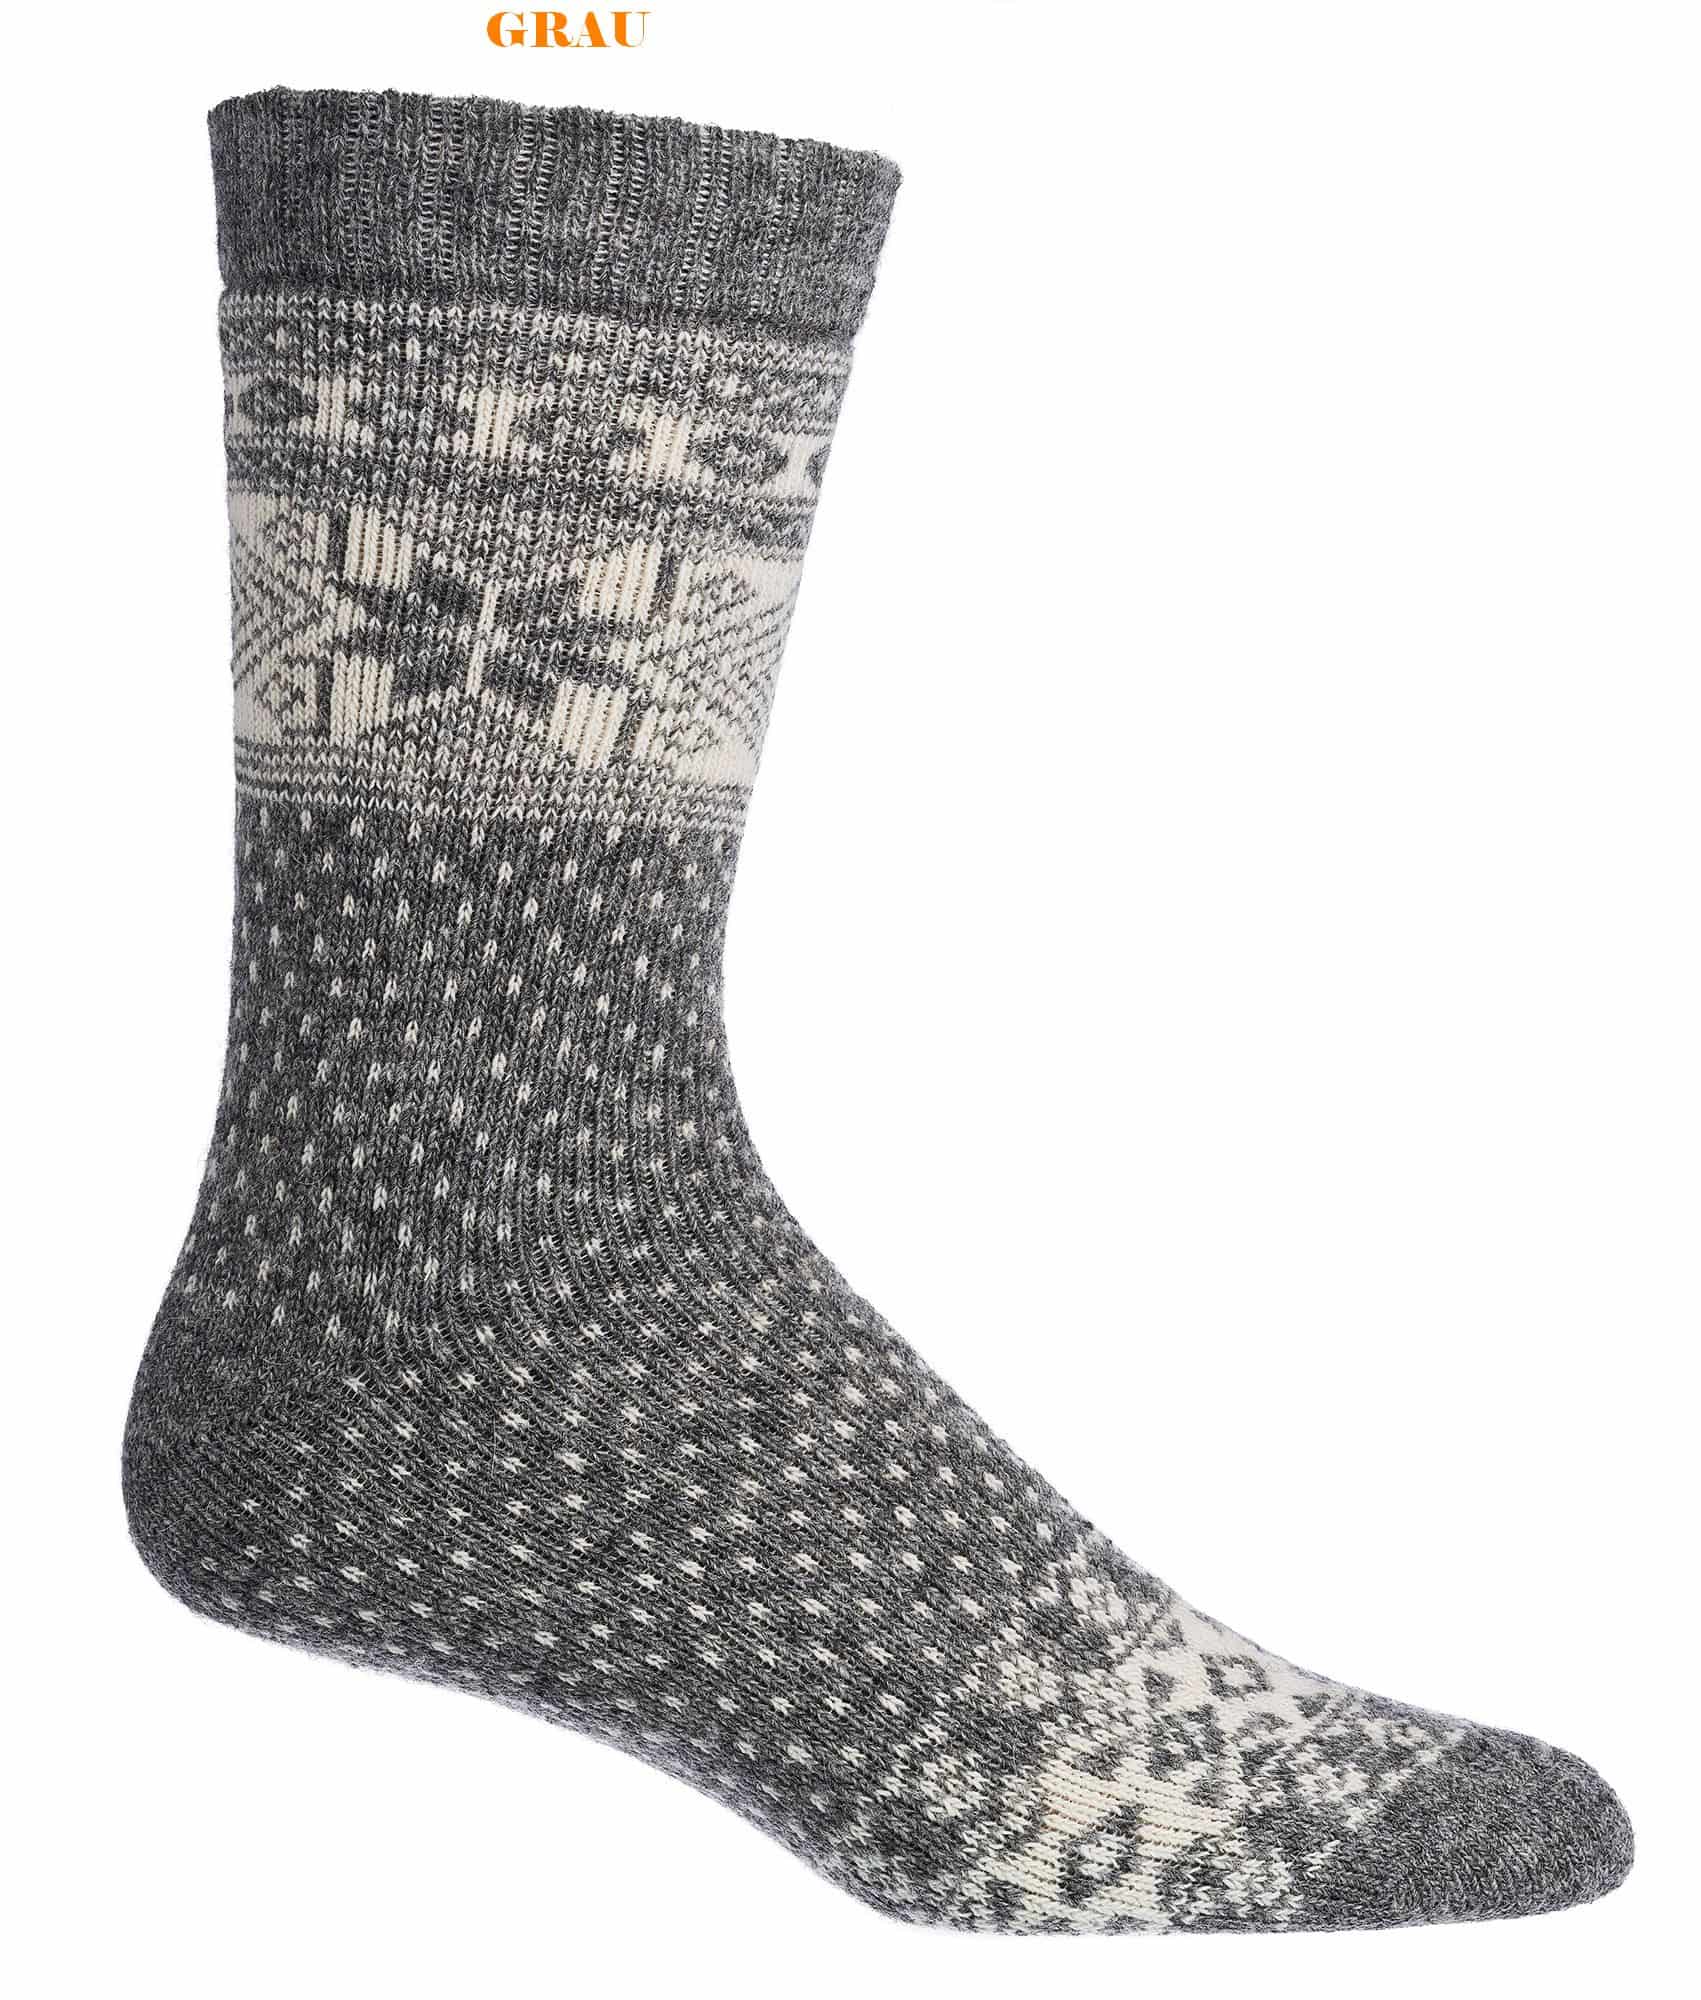 Norweger-Socken mit Merino- und Alpaka WOLLE  für Teenager, Damen & Herren  2 Paar